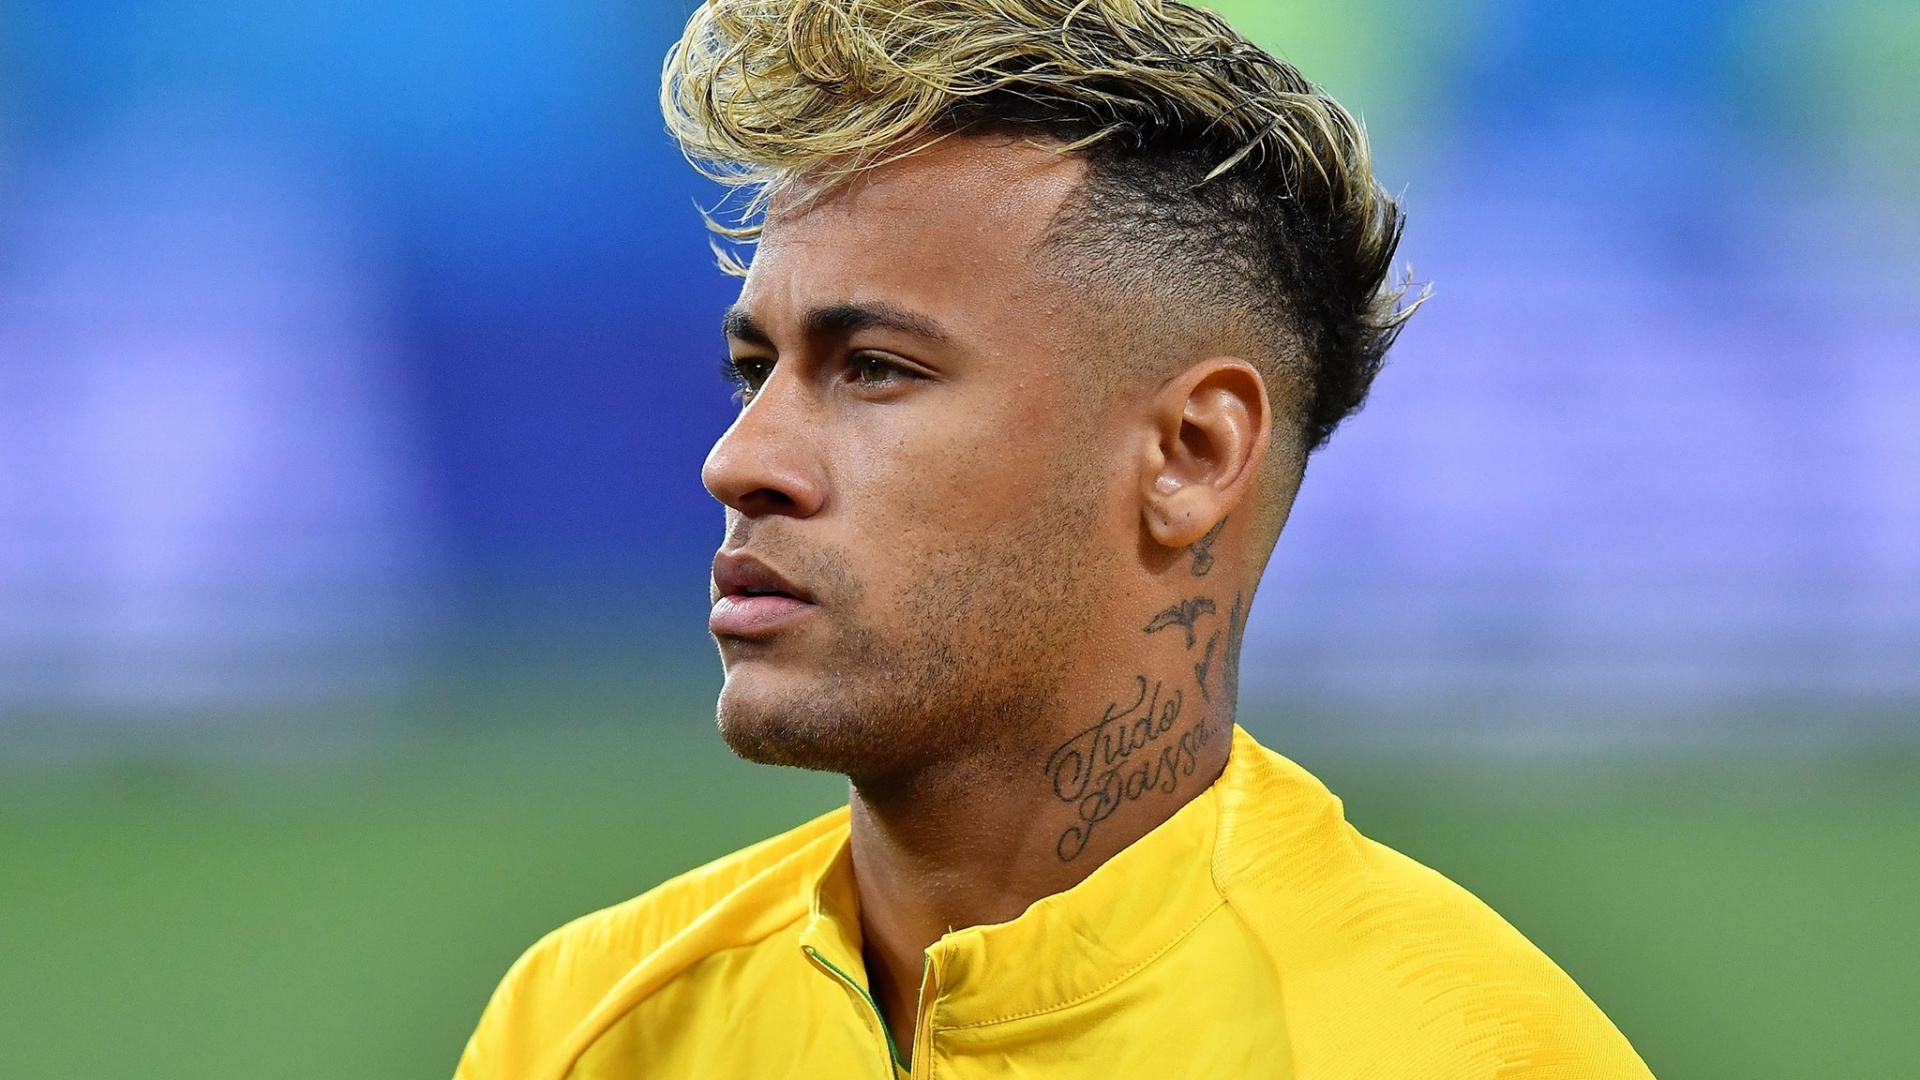 foto di neymar jr wallpaper,capelli,acconciatura,fronte,calciatore,giocatore